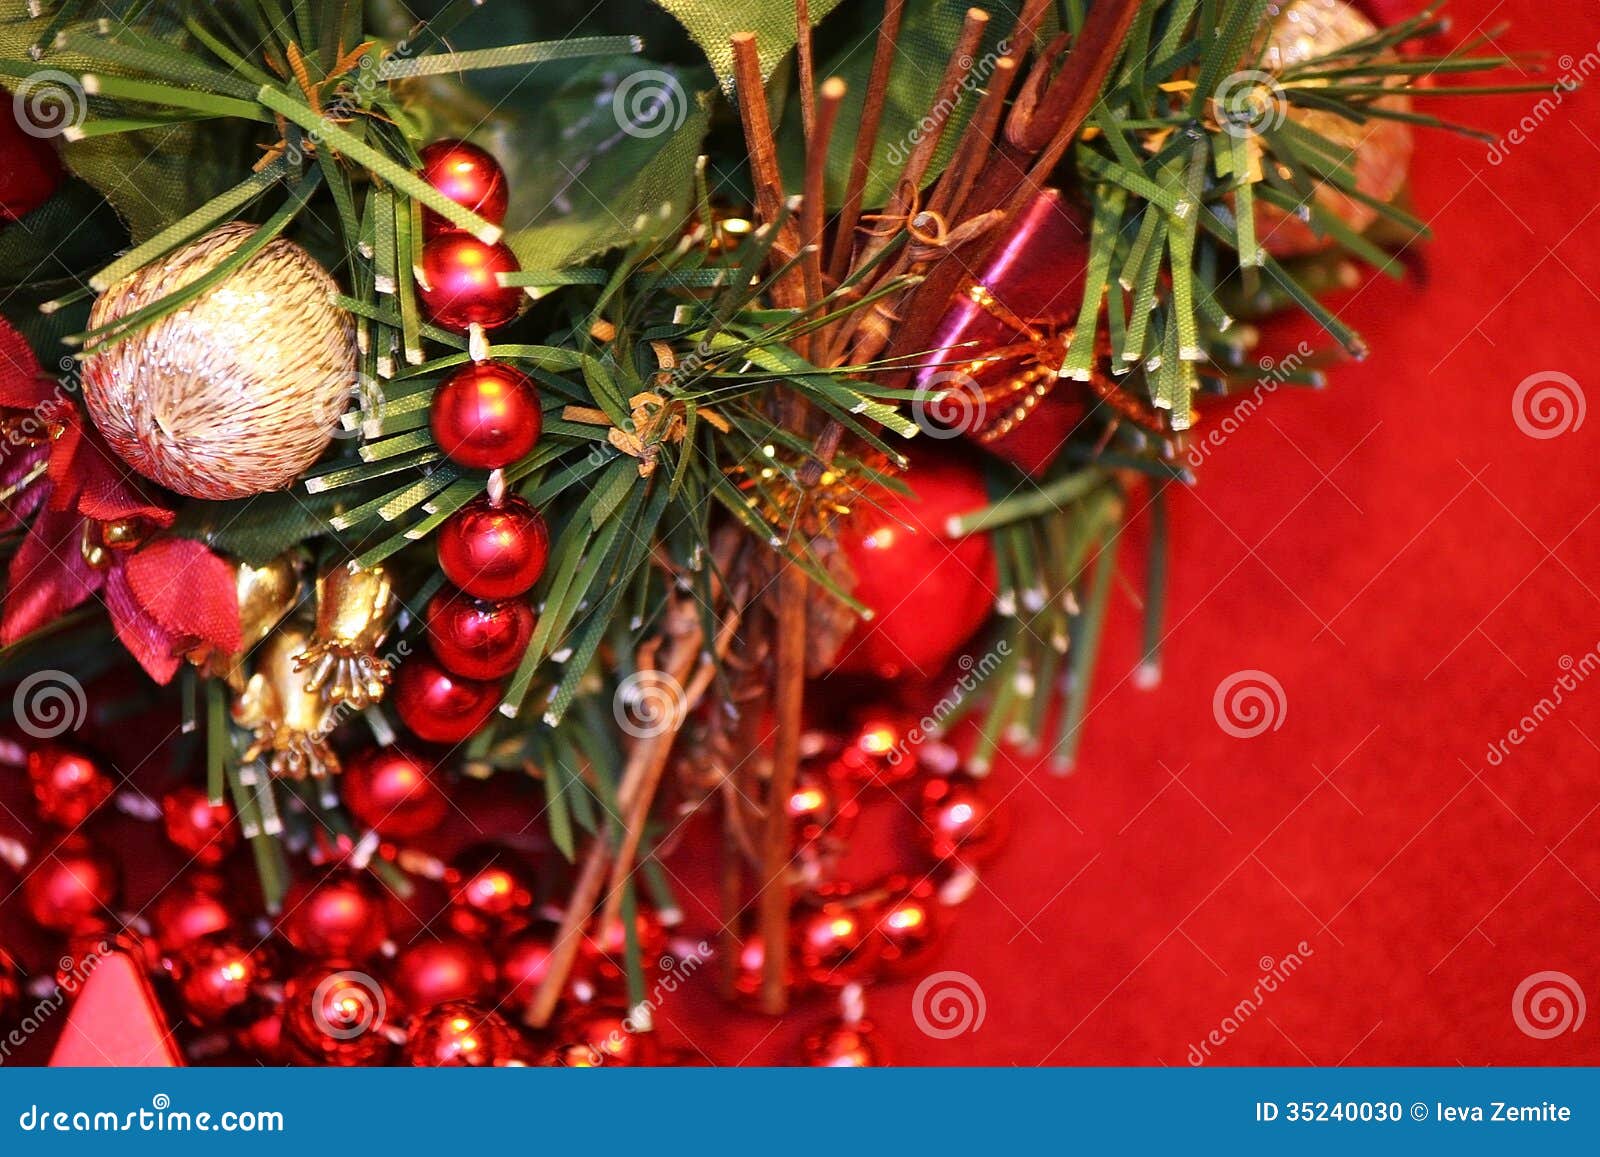 Christmas decoration stock photo. Image of decoration - 35240030